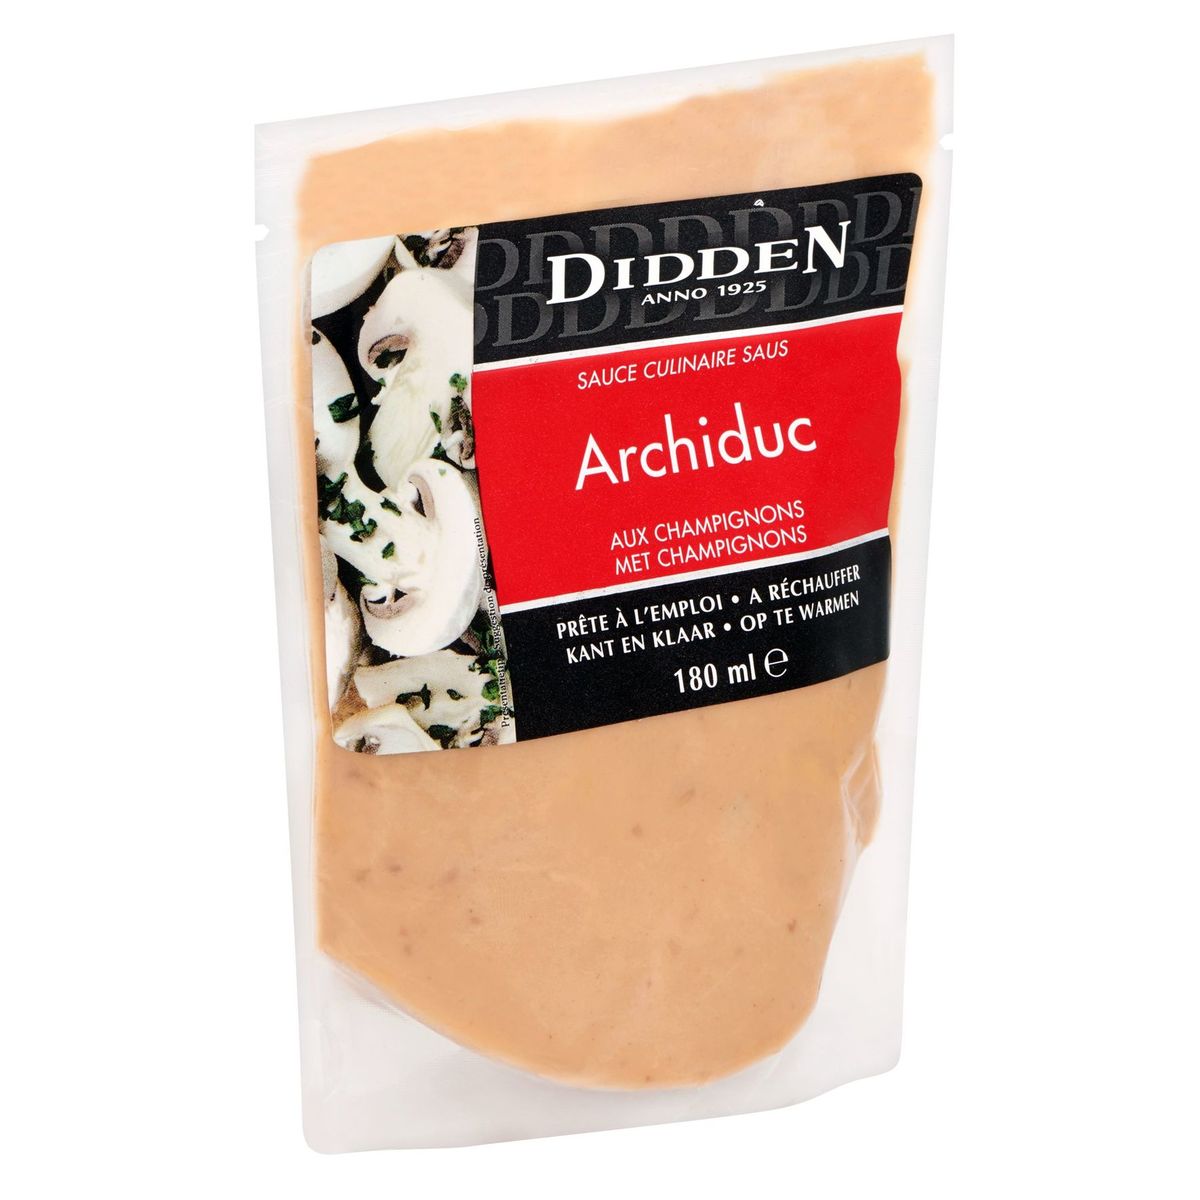 Didden Sauce Culinaire Archiduc aux Champignons 180 ml